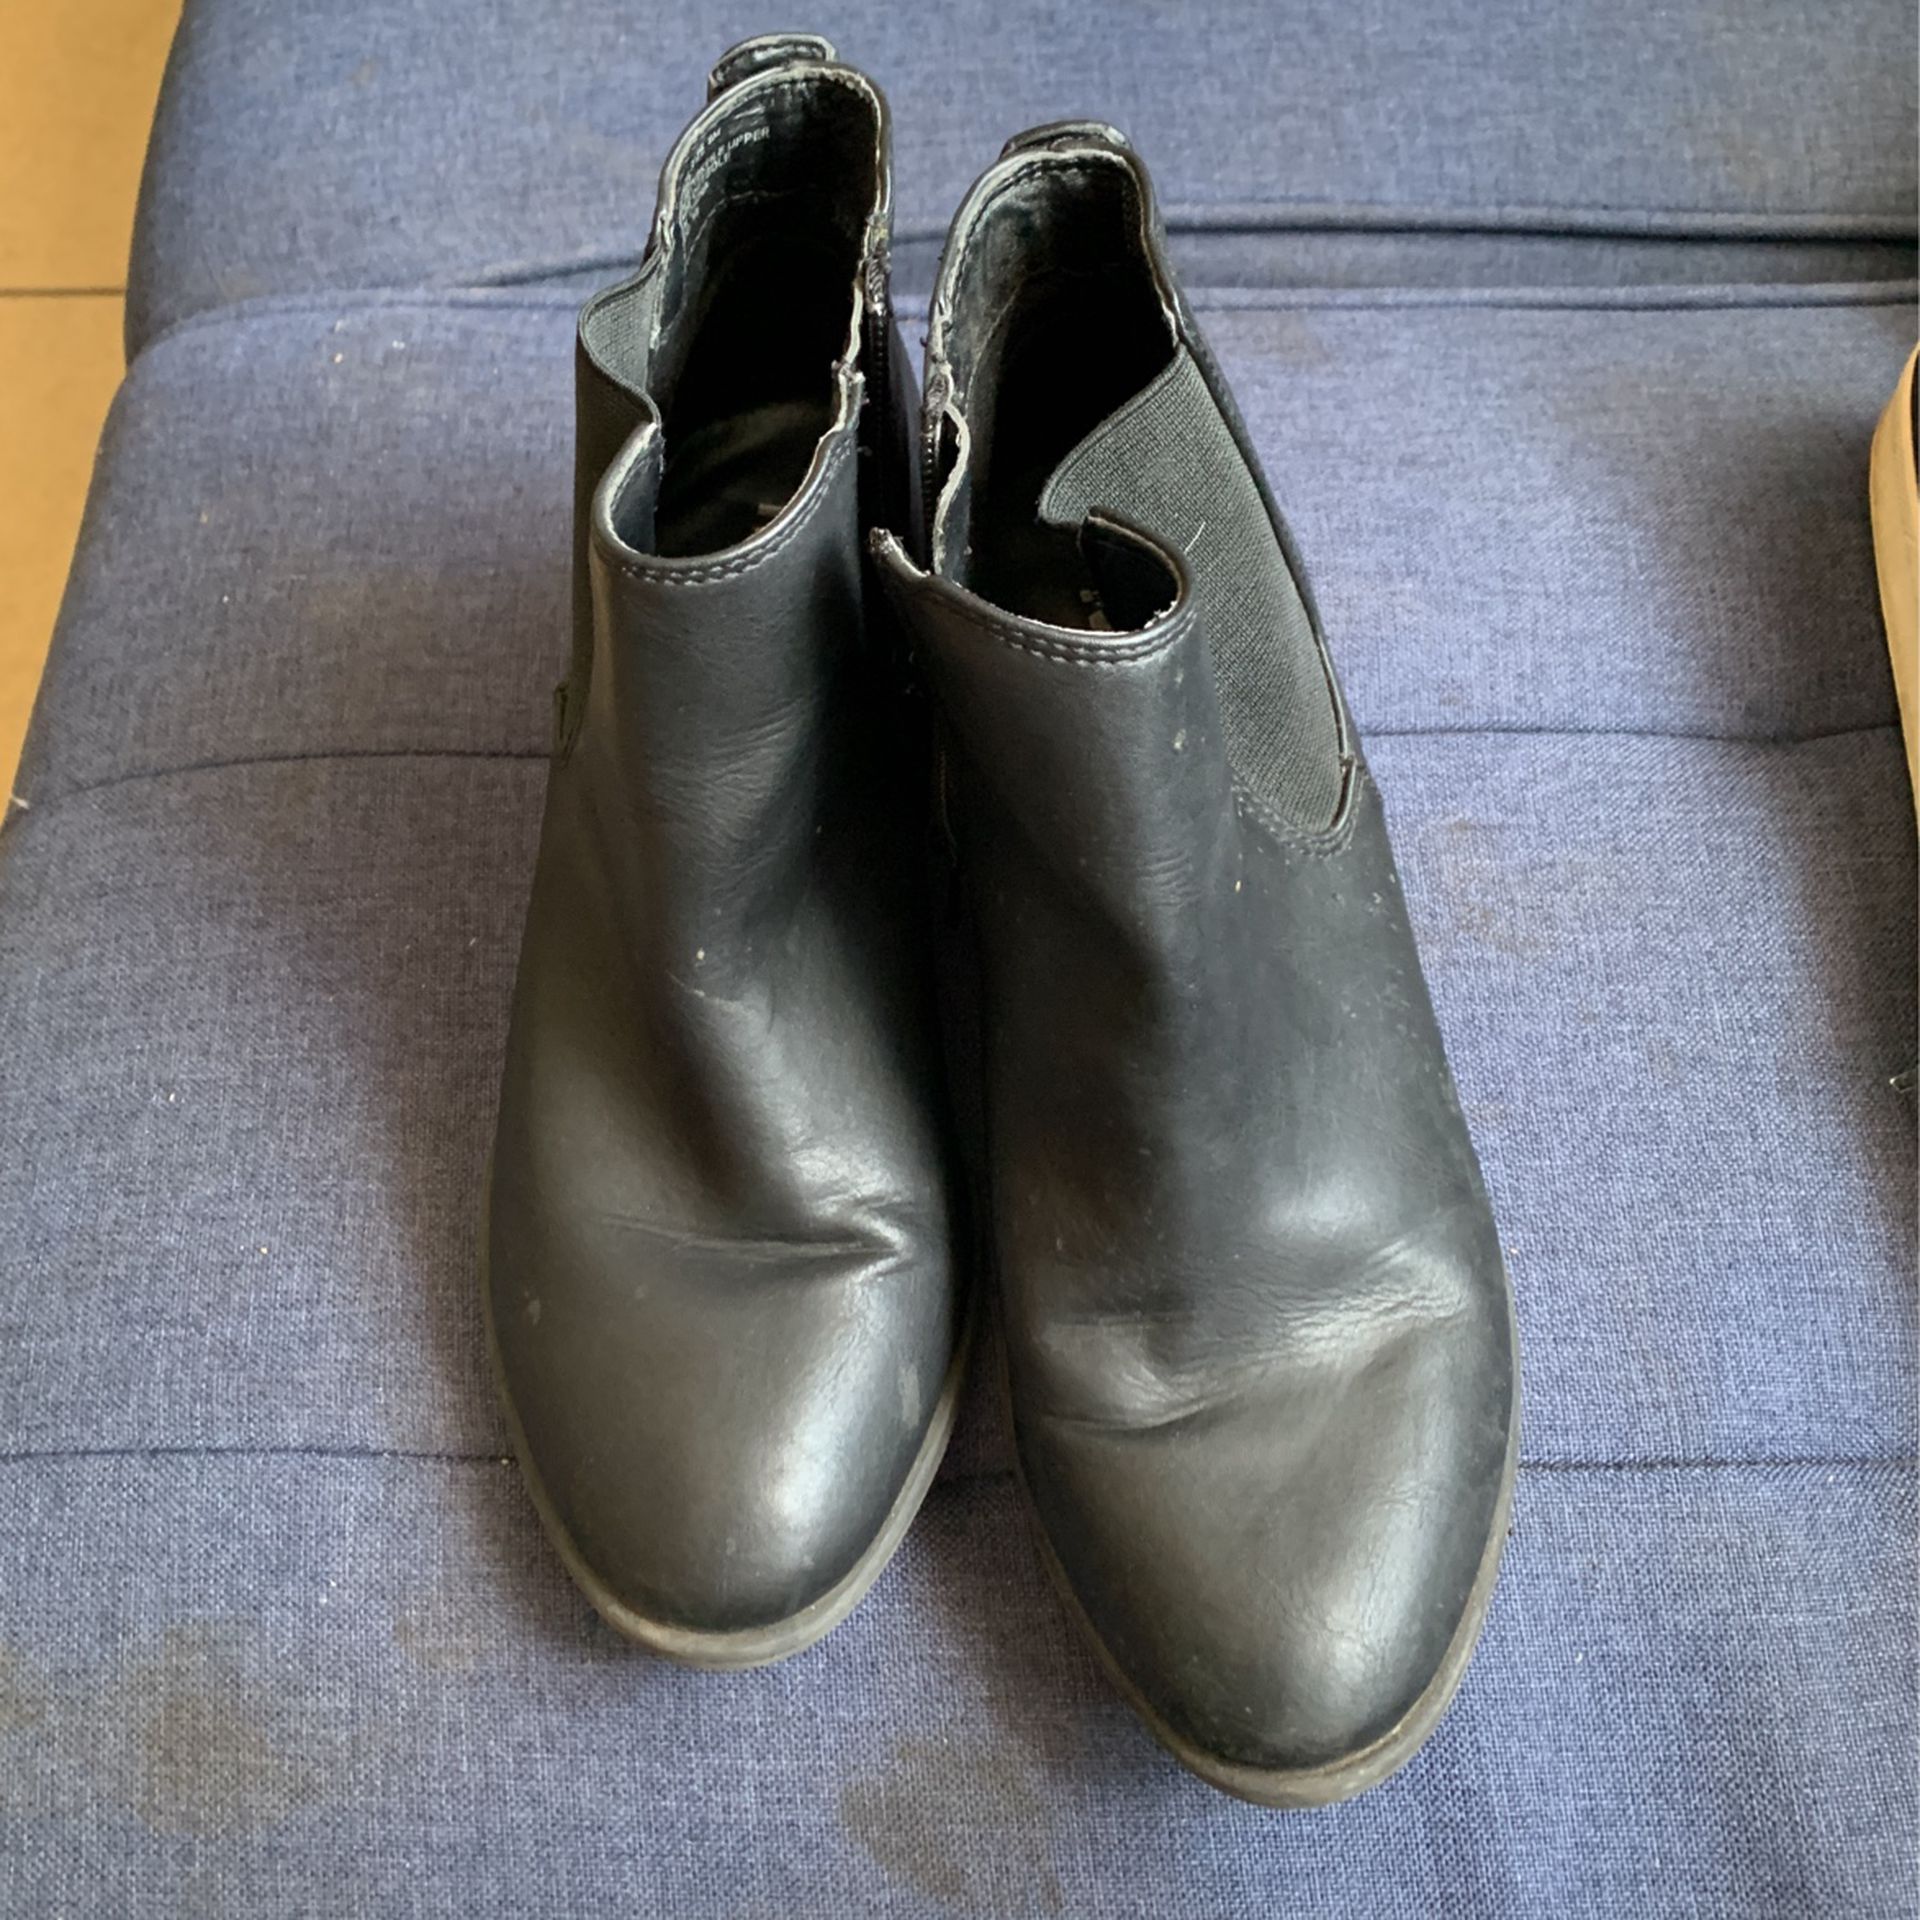 Black boots size 6m